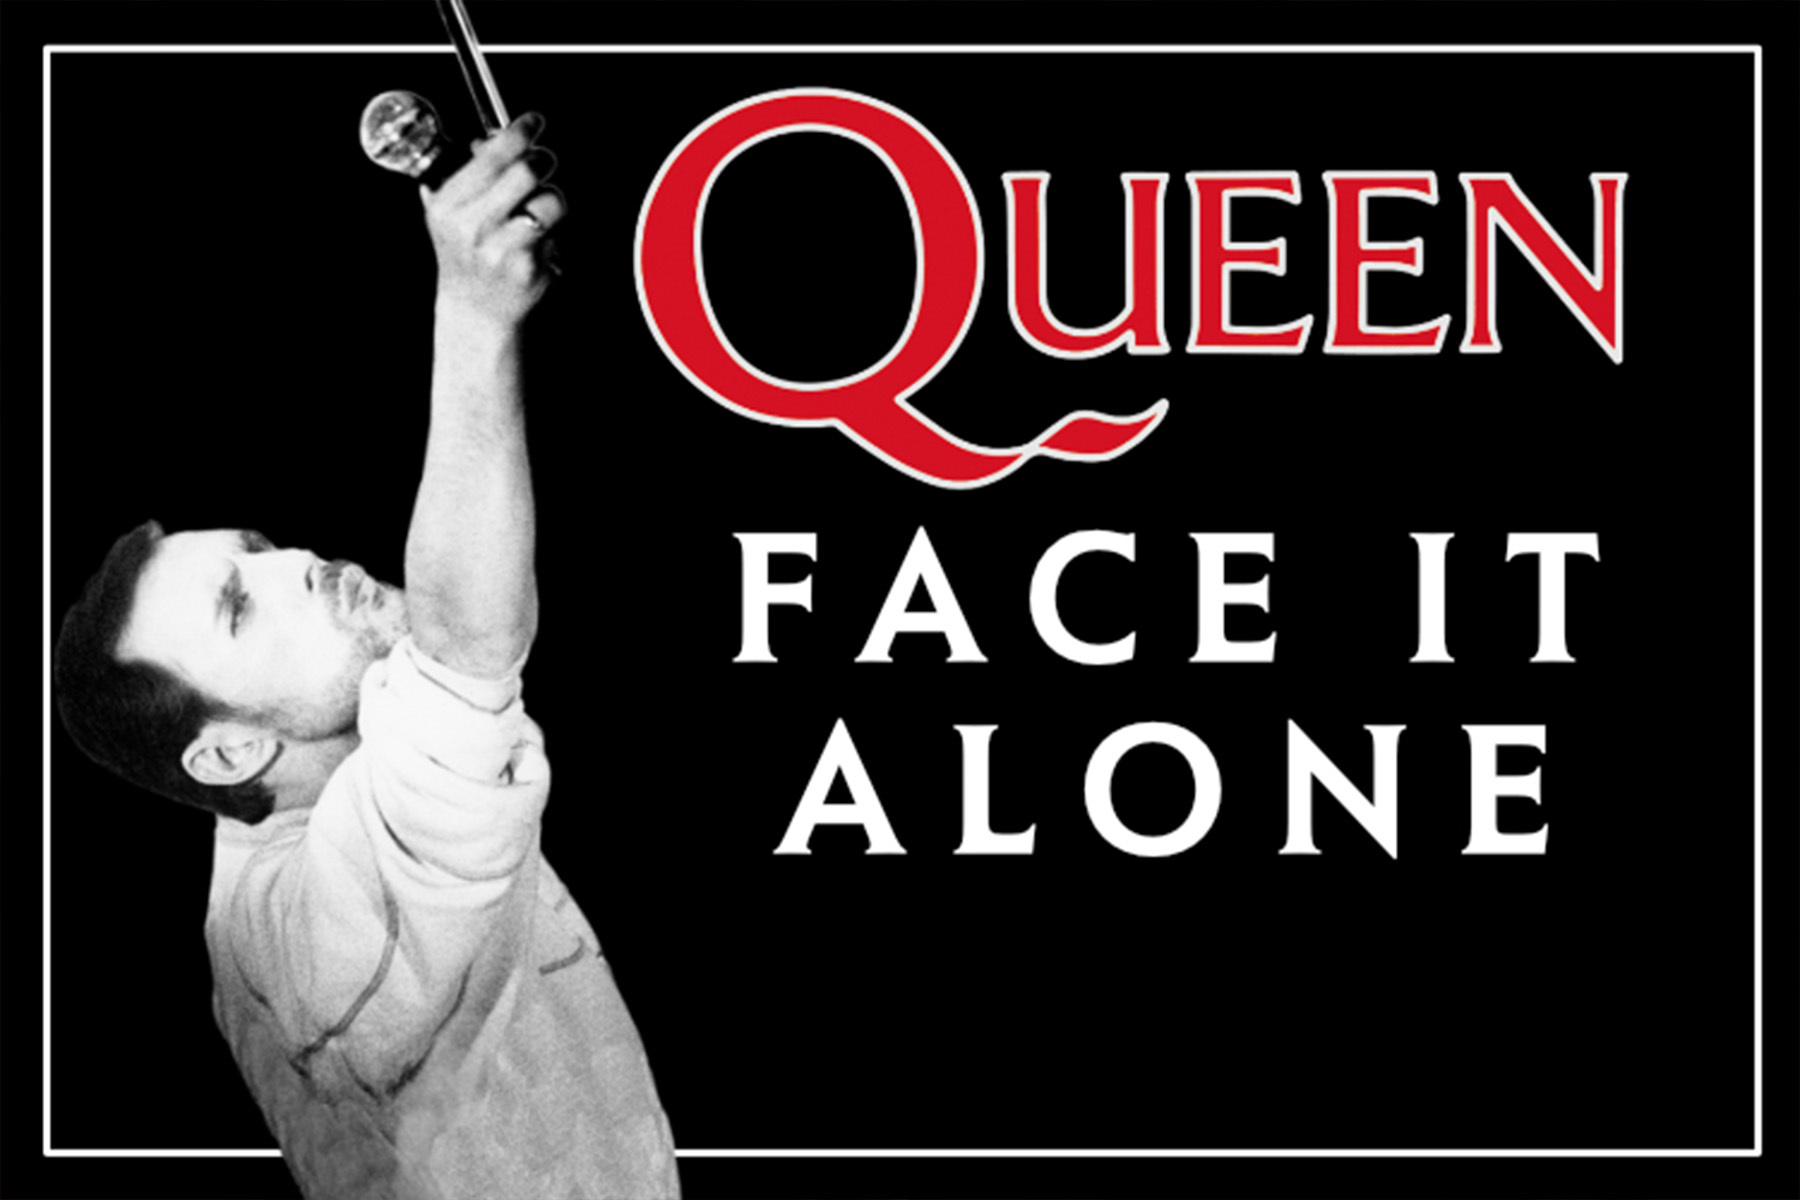 Imagen de la nueva cancin de Queen, 'Face it alone'.